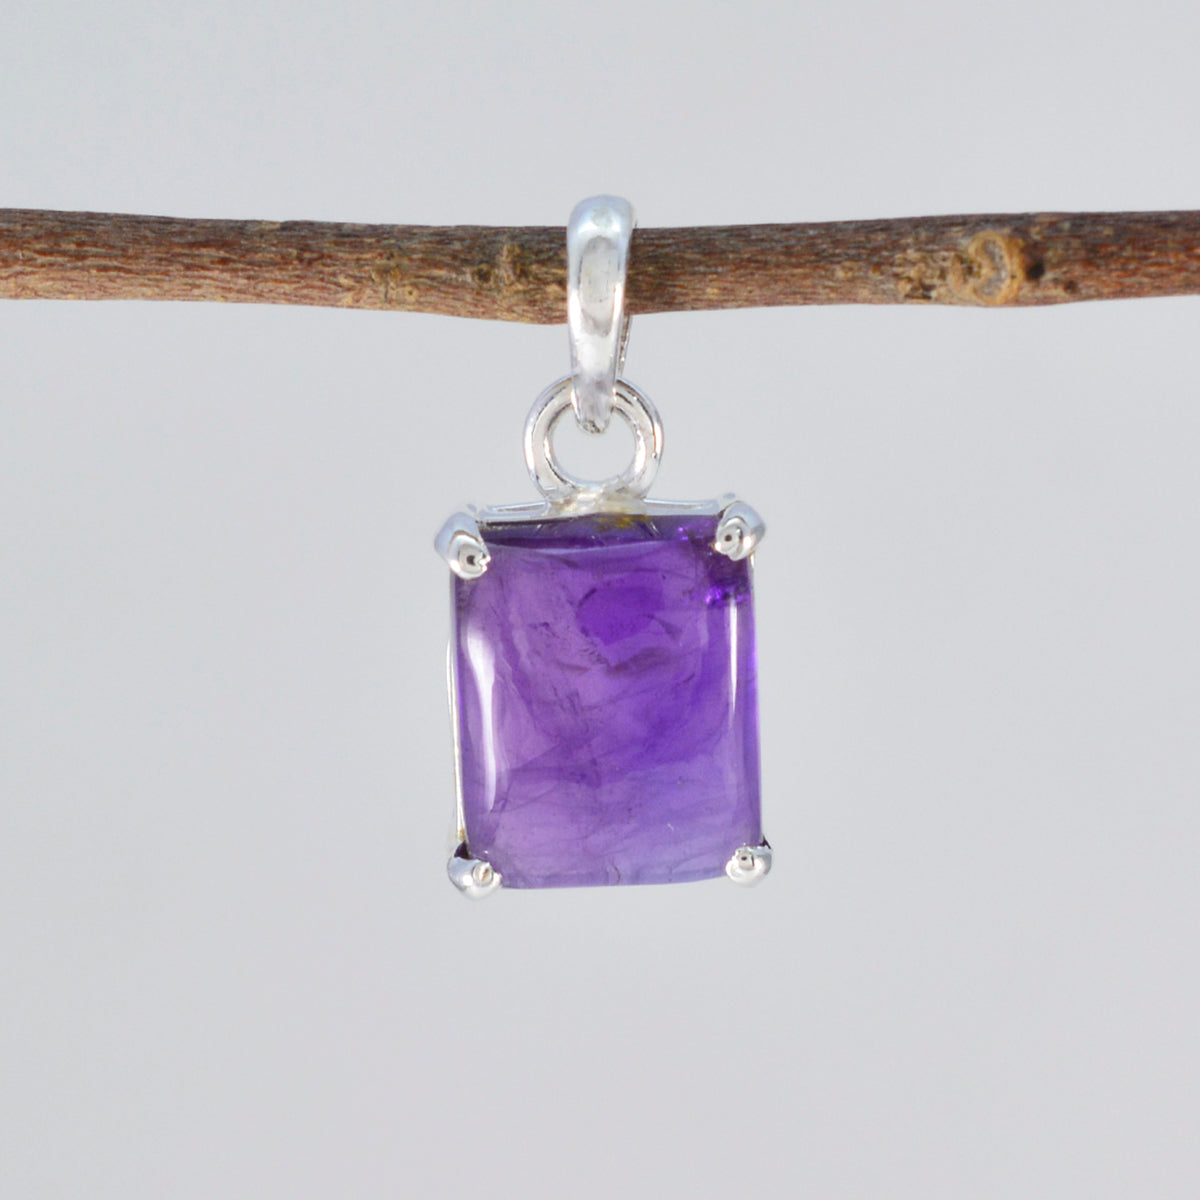 Riyo magnifiques pierres précieuses octogone cabochon violet améthyste pendentif en argent massif cadeau pour le vendredi saint